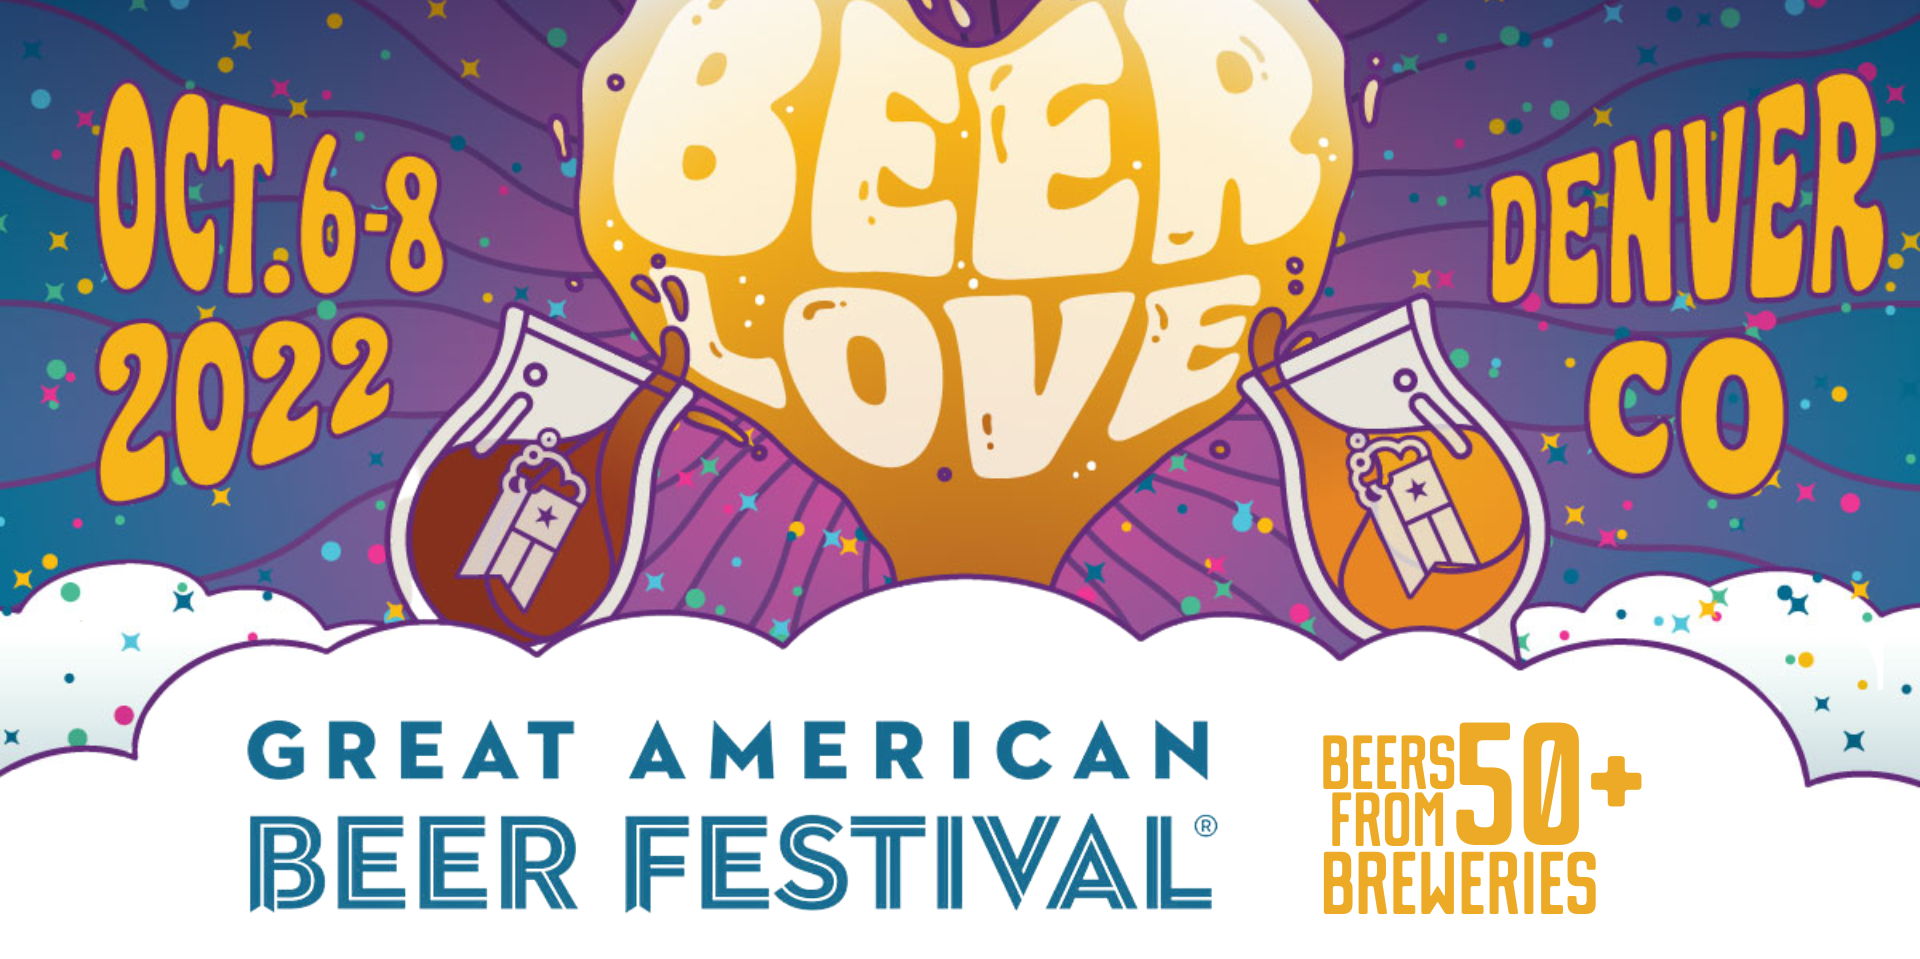 Great American Beer Festival Week promotional image